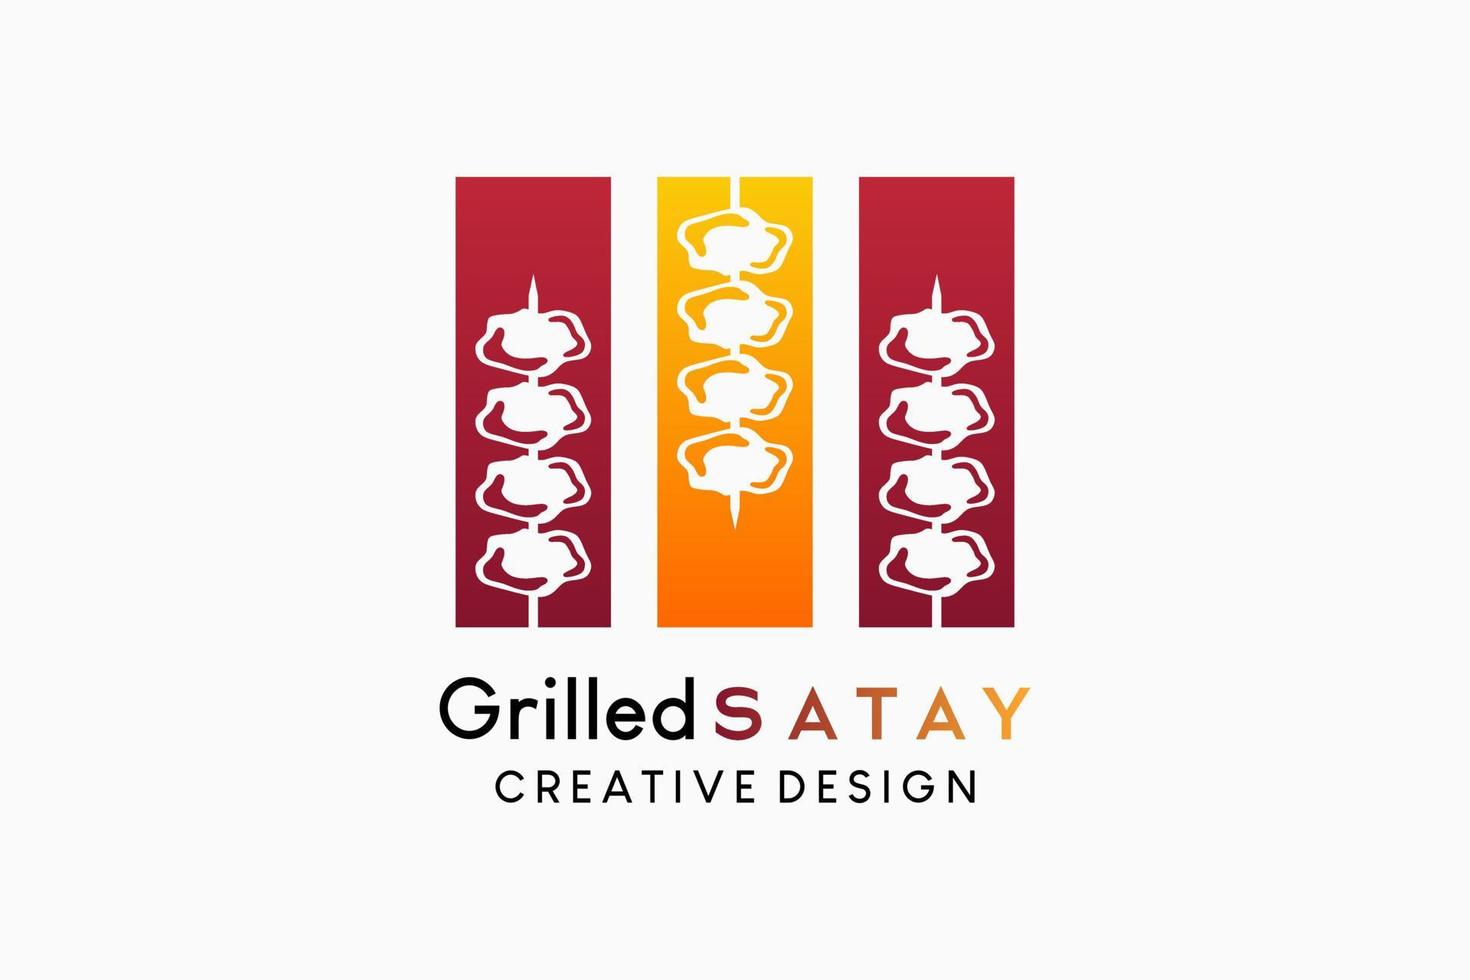 création de logo satay grillé avec concept créatif, silhouette satay dans une boîte. illustration vectorielle vecteur